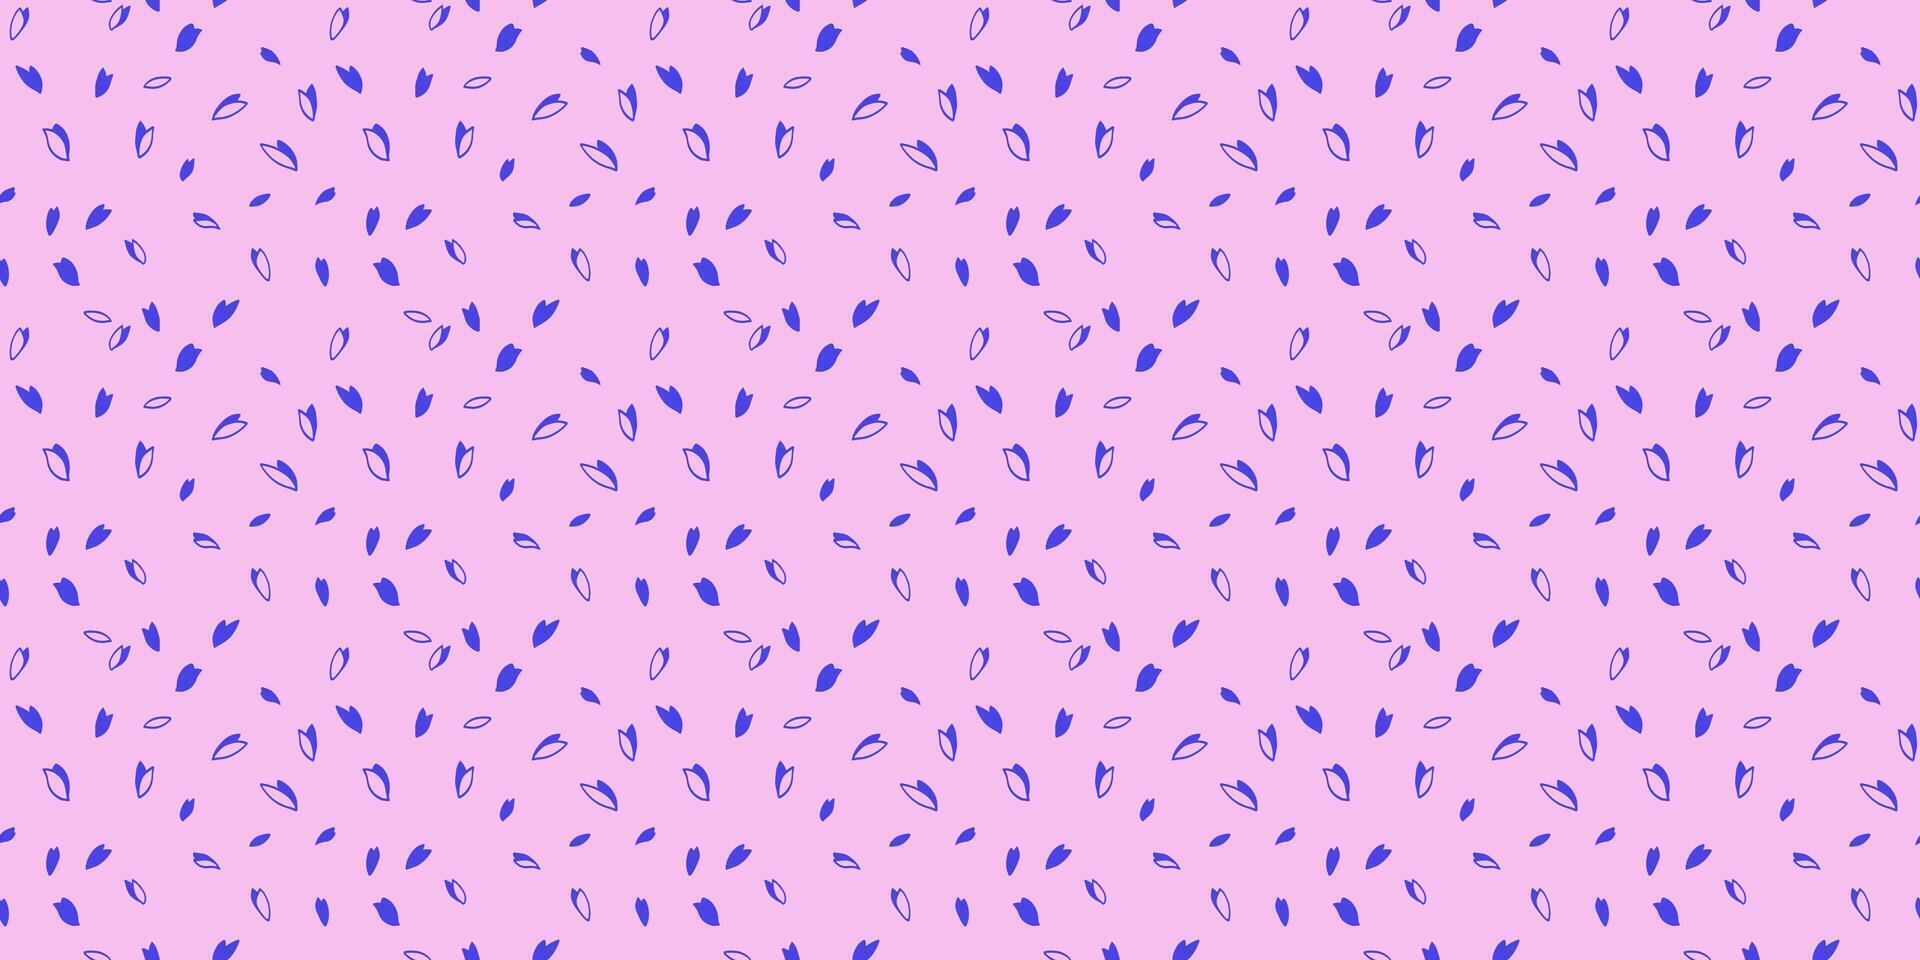 modisch beschwingt Polka Punkte, Tropfen, Flecken nahtlos Muster. kreativ Blau zufällig Punkte, Schneeflocken, Kreise, Flugblätter auf ein Rosa Hintergrund. Vektor Hand gezeichnet skizzieren winzig Form. Design zum Stoff, drucken